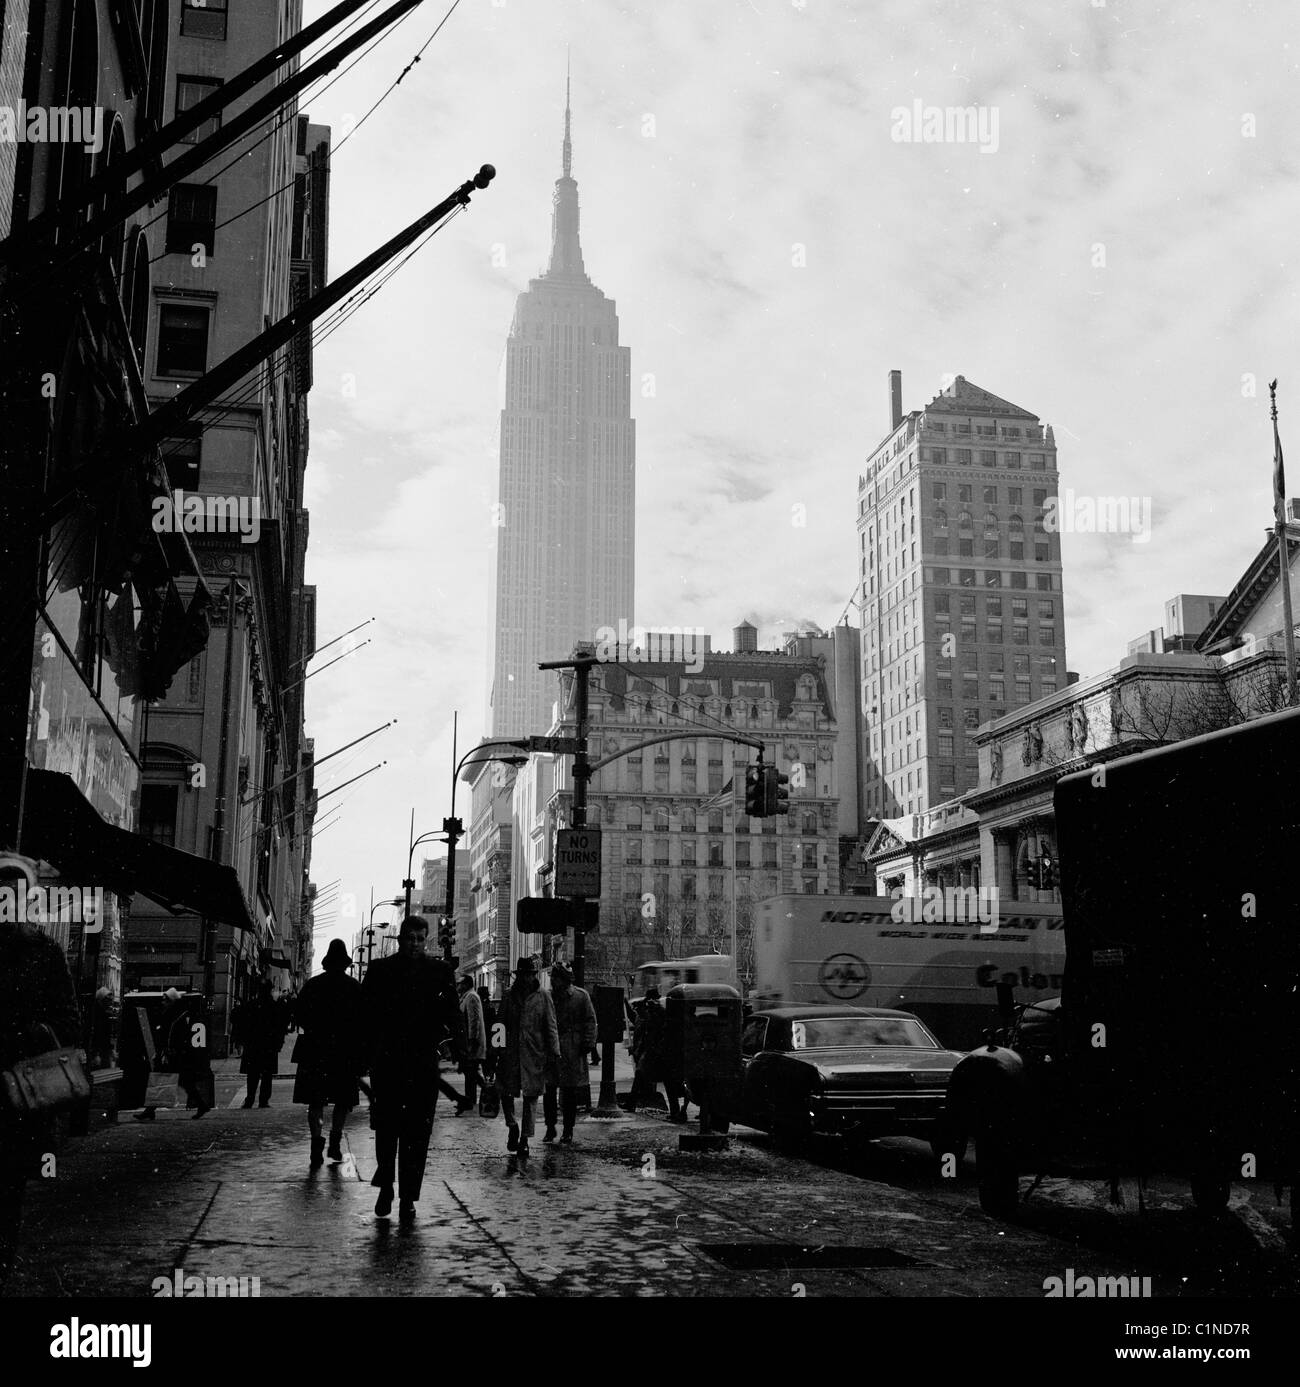 Phố New York năm 1950 với kiến trúc Art Deco trên nền đen trắng - một cảnh tượng lộng lẫy và tuyệt đẹp, đem lại cho người xem những cảm xúc tuyệt vời nhất. Hãy thưởng thức những hình ảnh phố New York năm 1950 để hiểu rõ hơn về nét độc đáo của Kiến trúc Art Deco và sự phát triển của thành phố đầy thịnh vượng này.